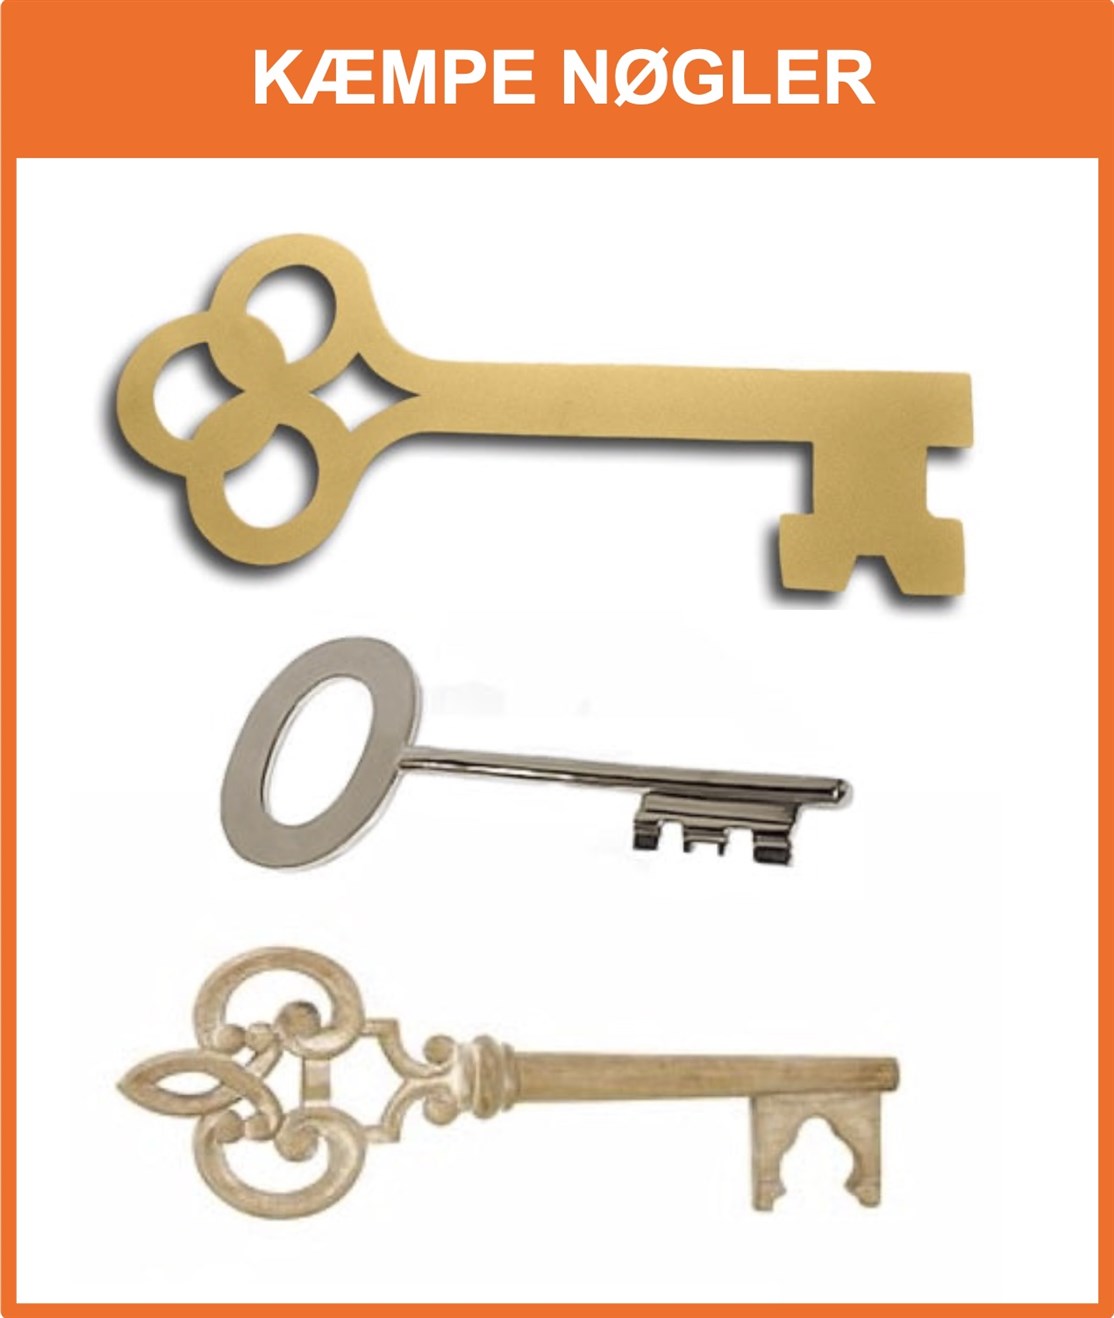 Salg Kæmpe Nøgler med gravering til indvielser m.m.
- klik på billedet
*